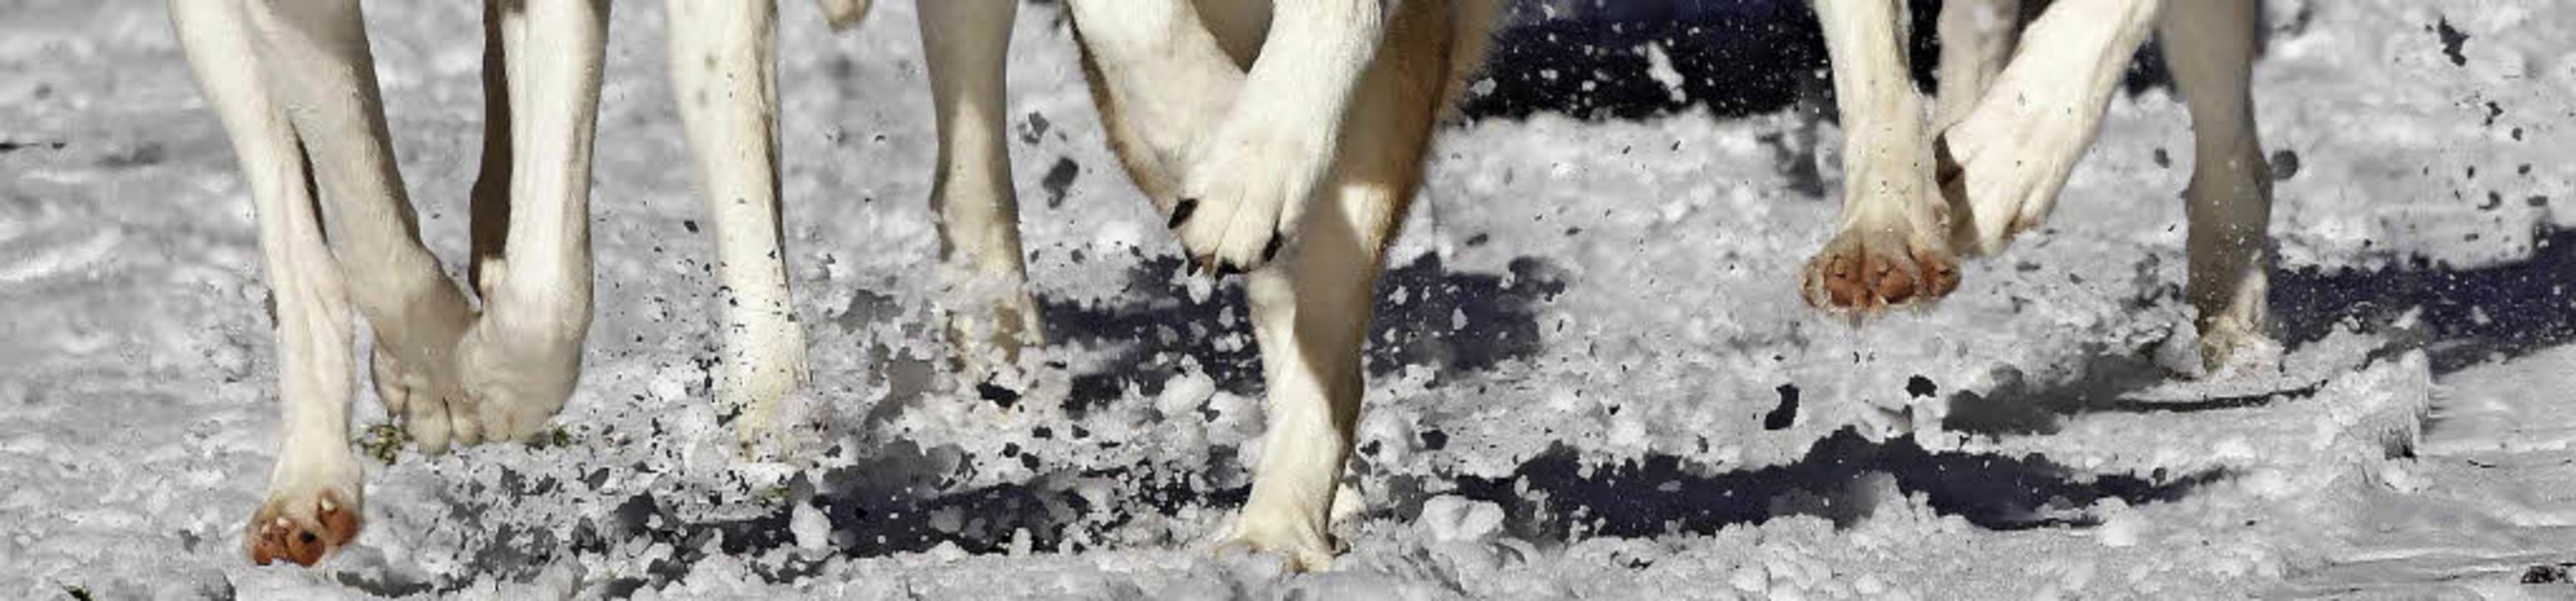 Leichtfüßig rannten die Huskys durch den Schnee.  | Foto: Wolfgang Scheu